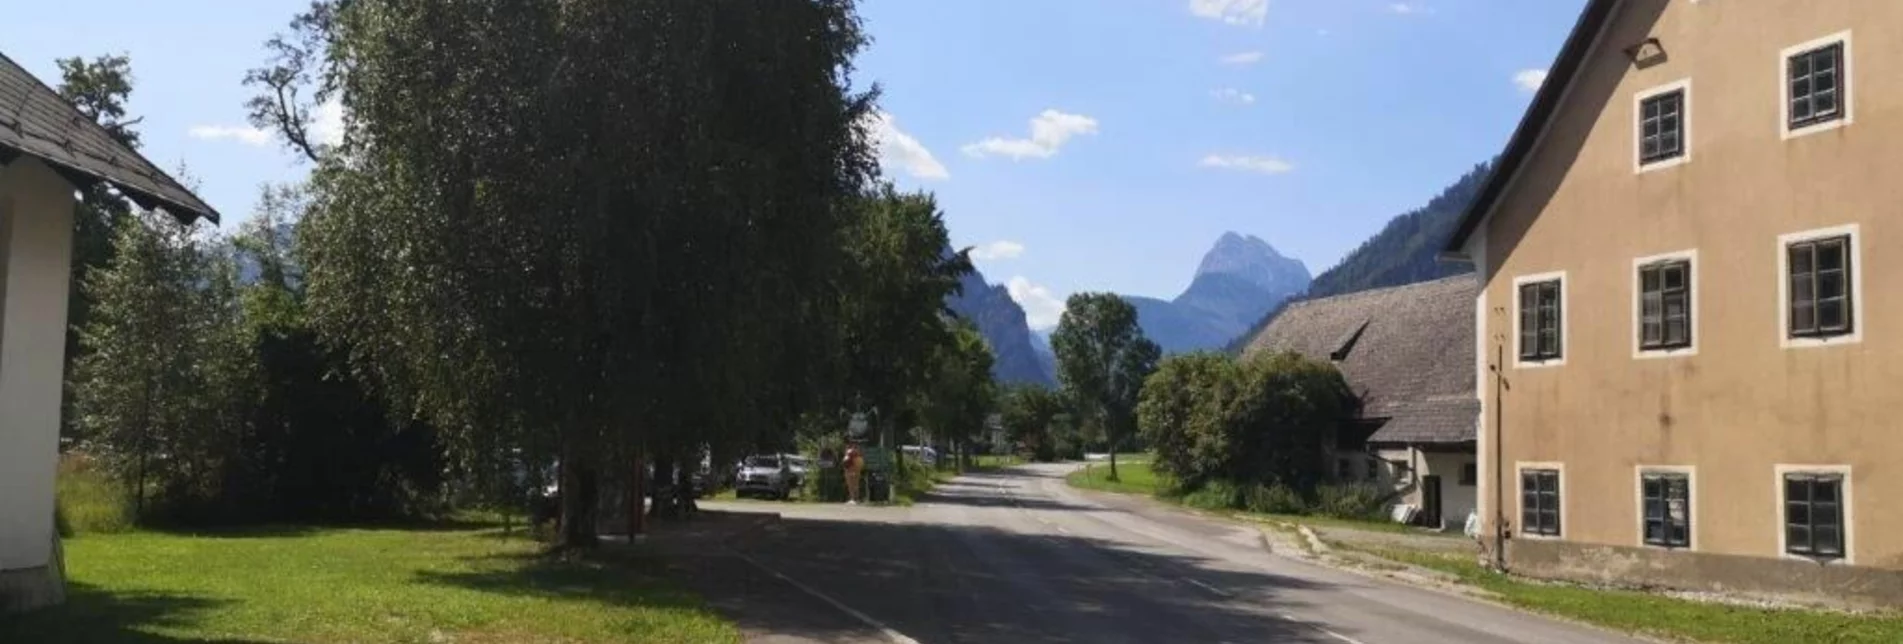 Wanderung Landler Spazierweg #6 Dörflrunde - Touren-Impression #1 | © TV Gesäuse